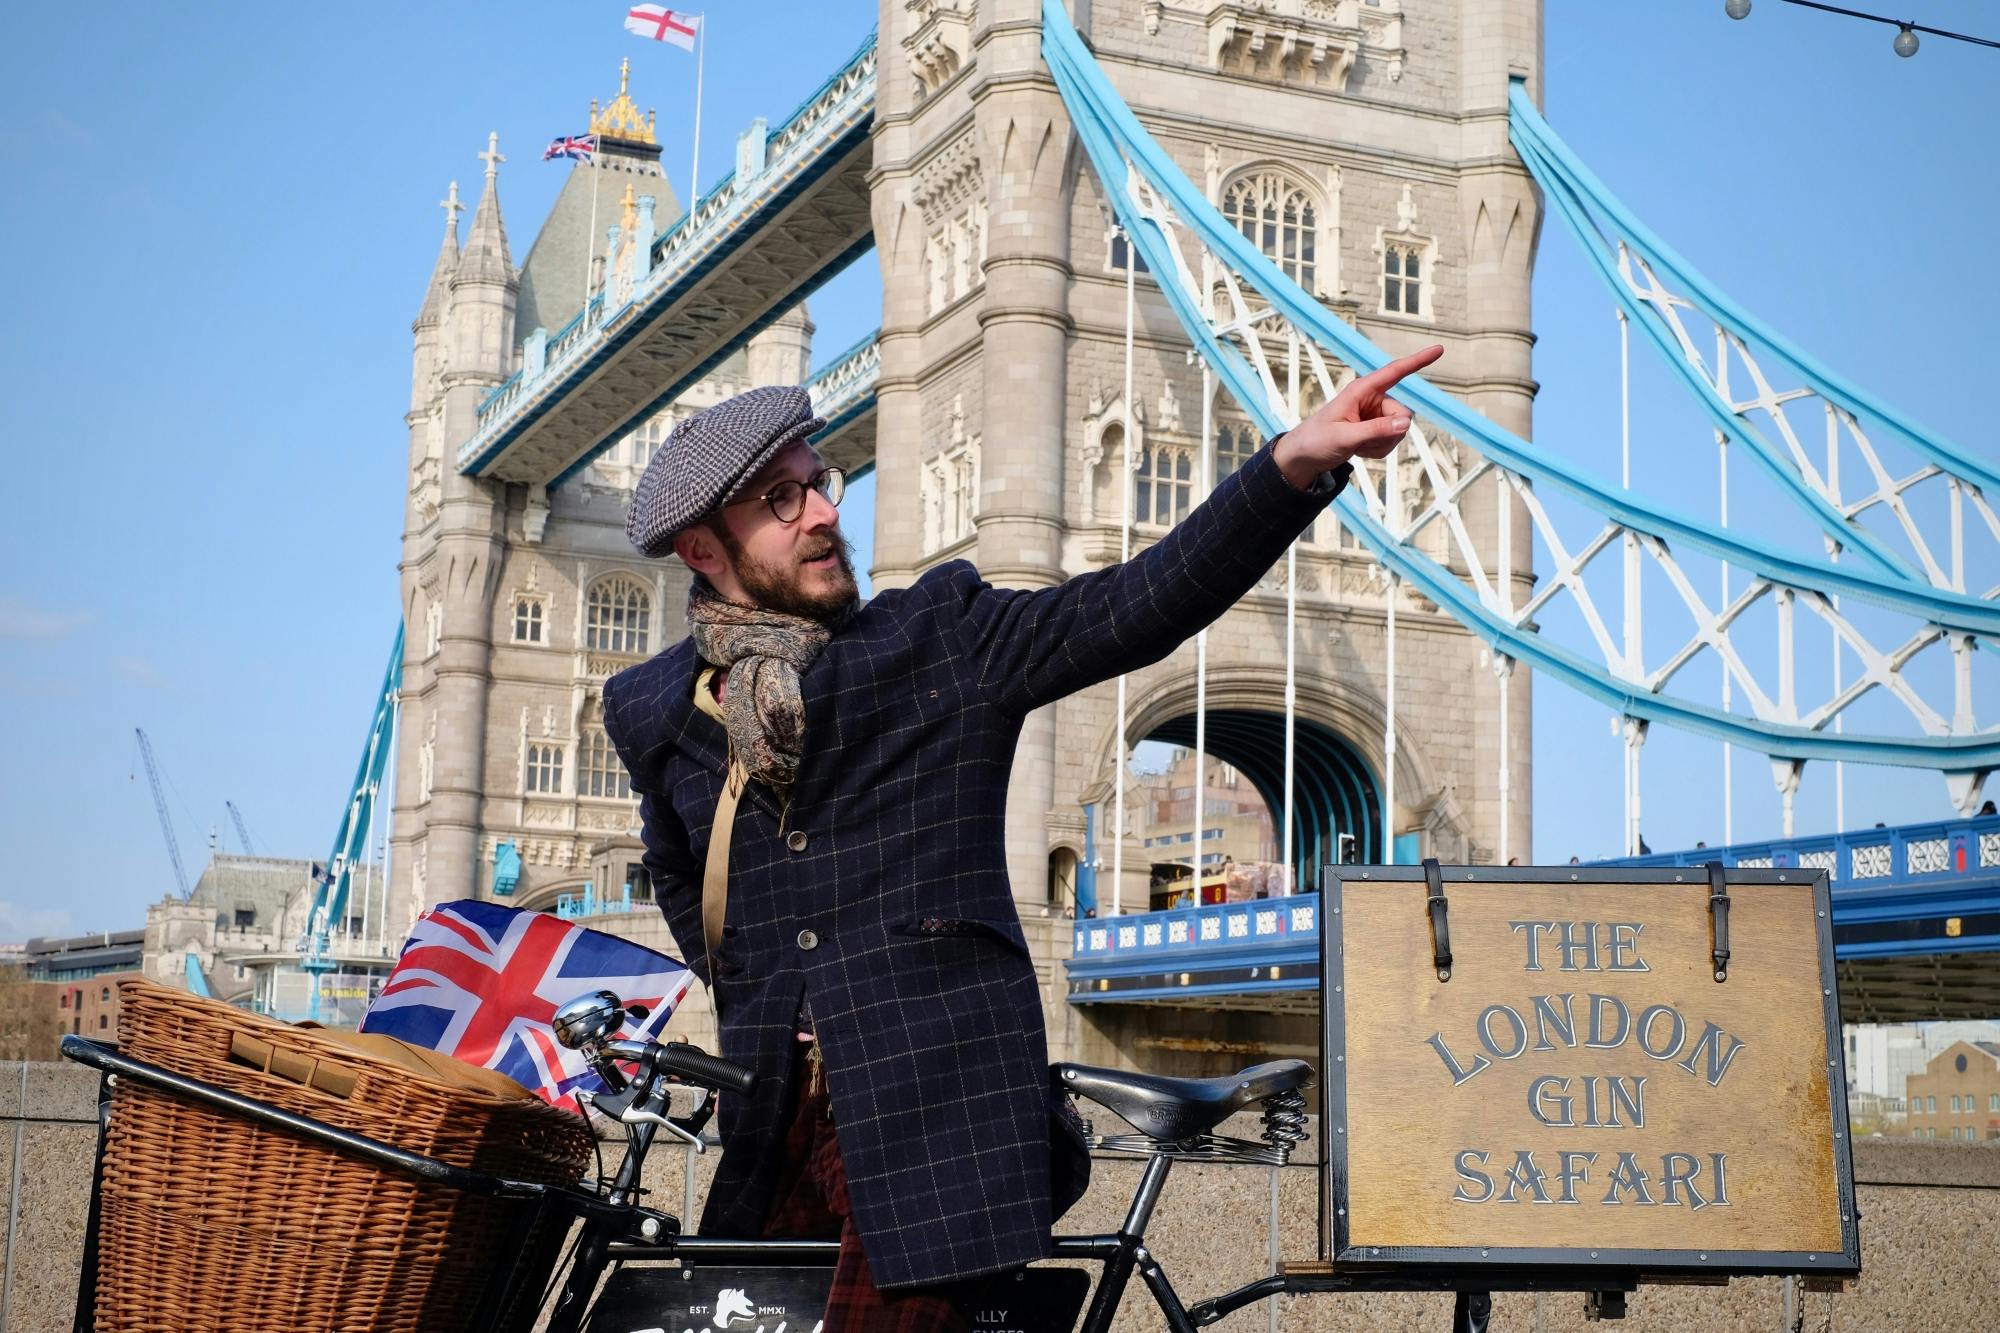 Begeleide fietstocht "London gin safari" met gin-proeverij